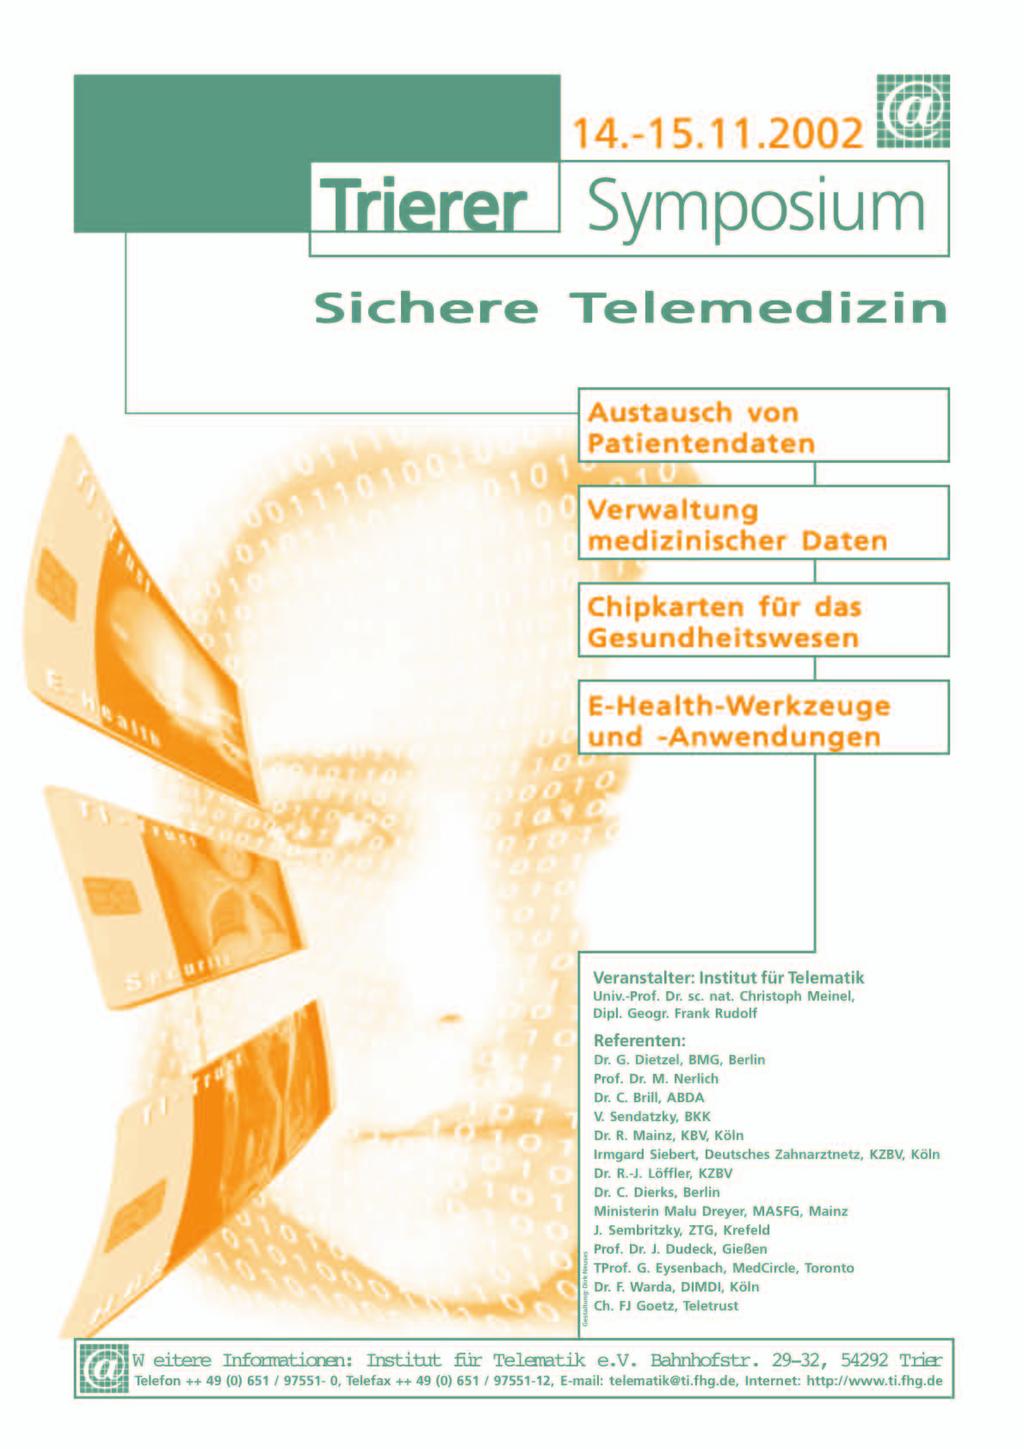 Institut für Telematik/Universität Trier (unter